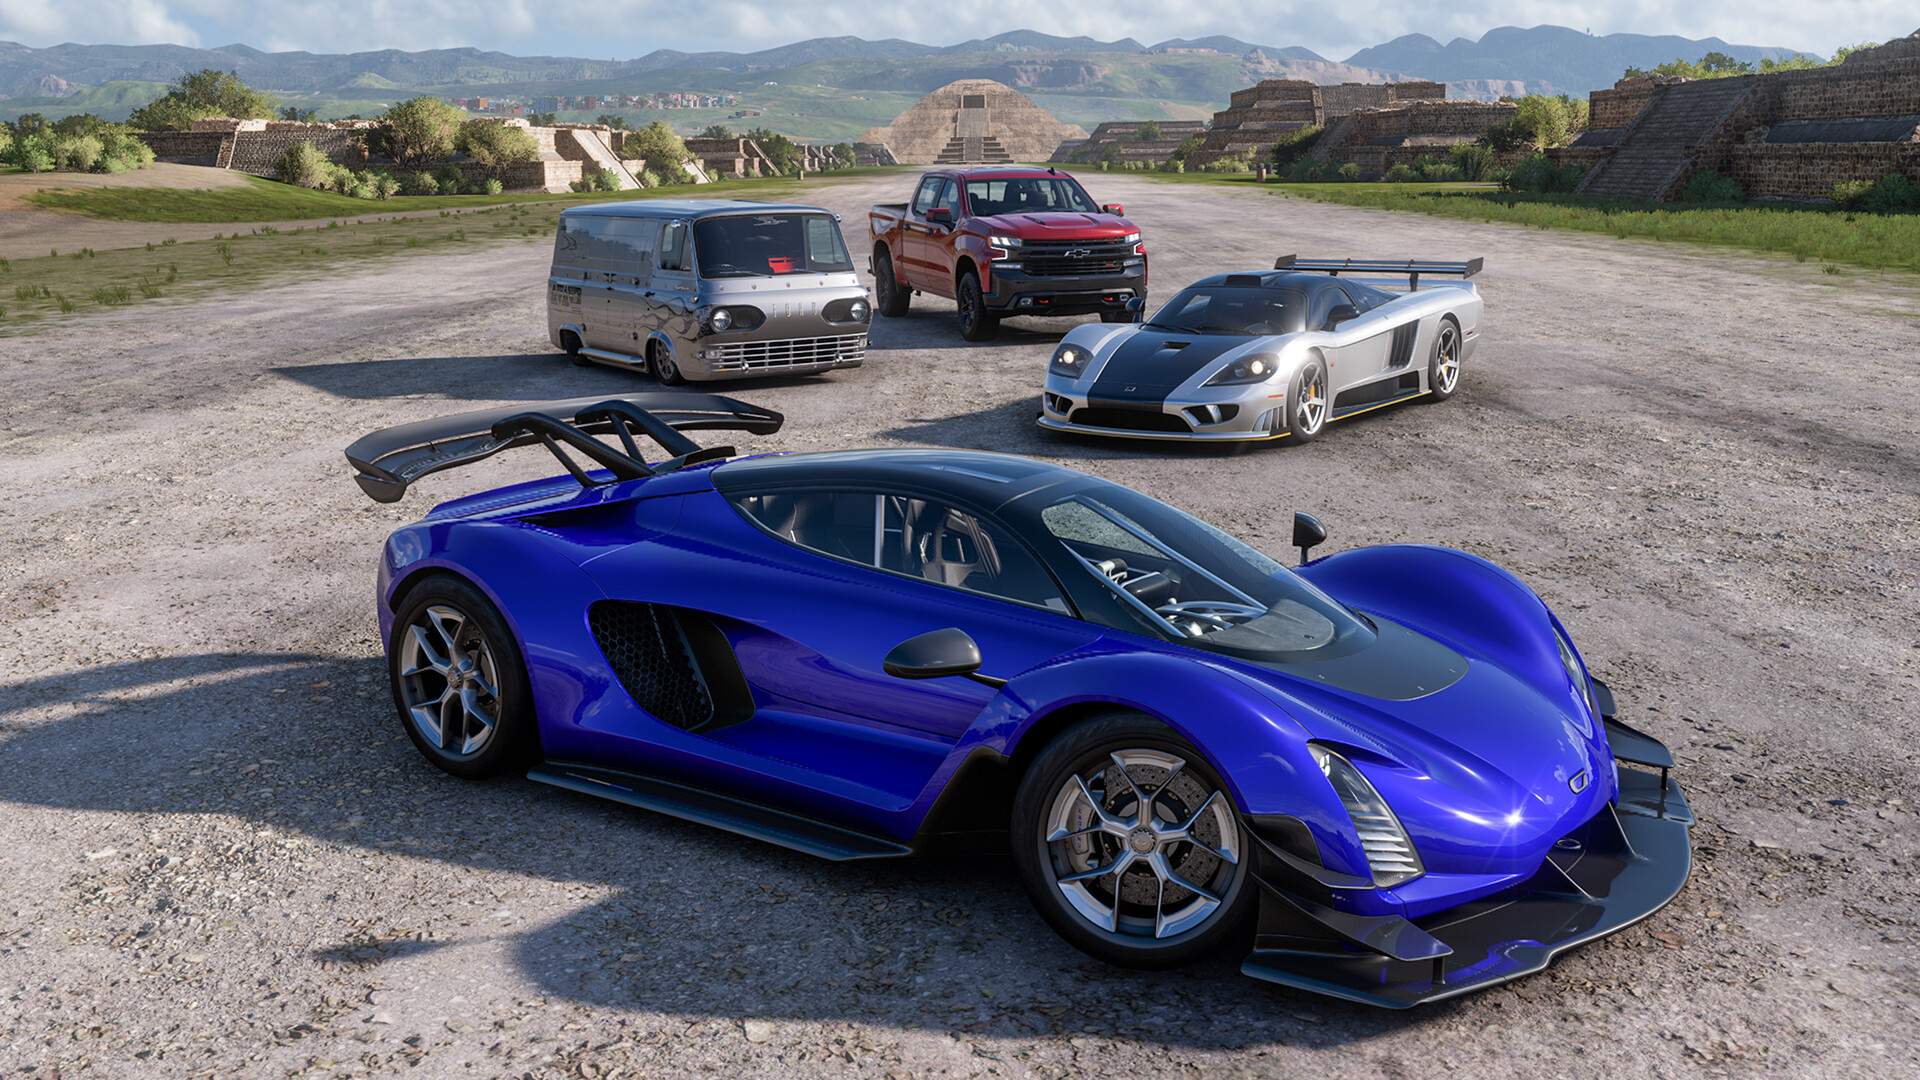 Comprar Pacote de Carros Hot Wheels Legends do Forza Horizon 4 Microsoft  Store